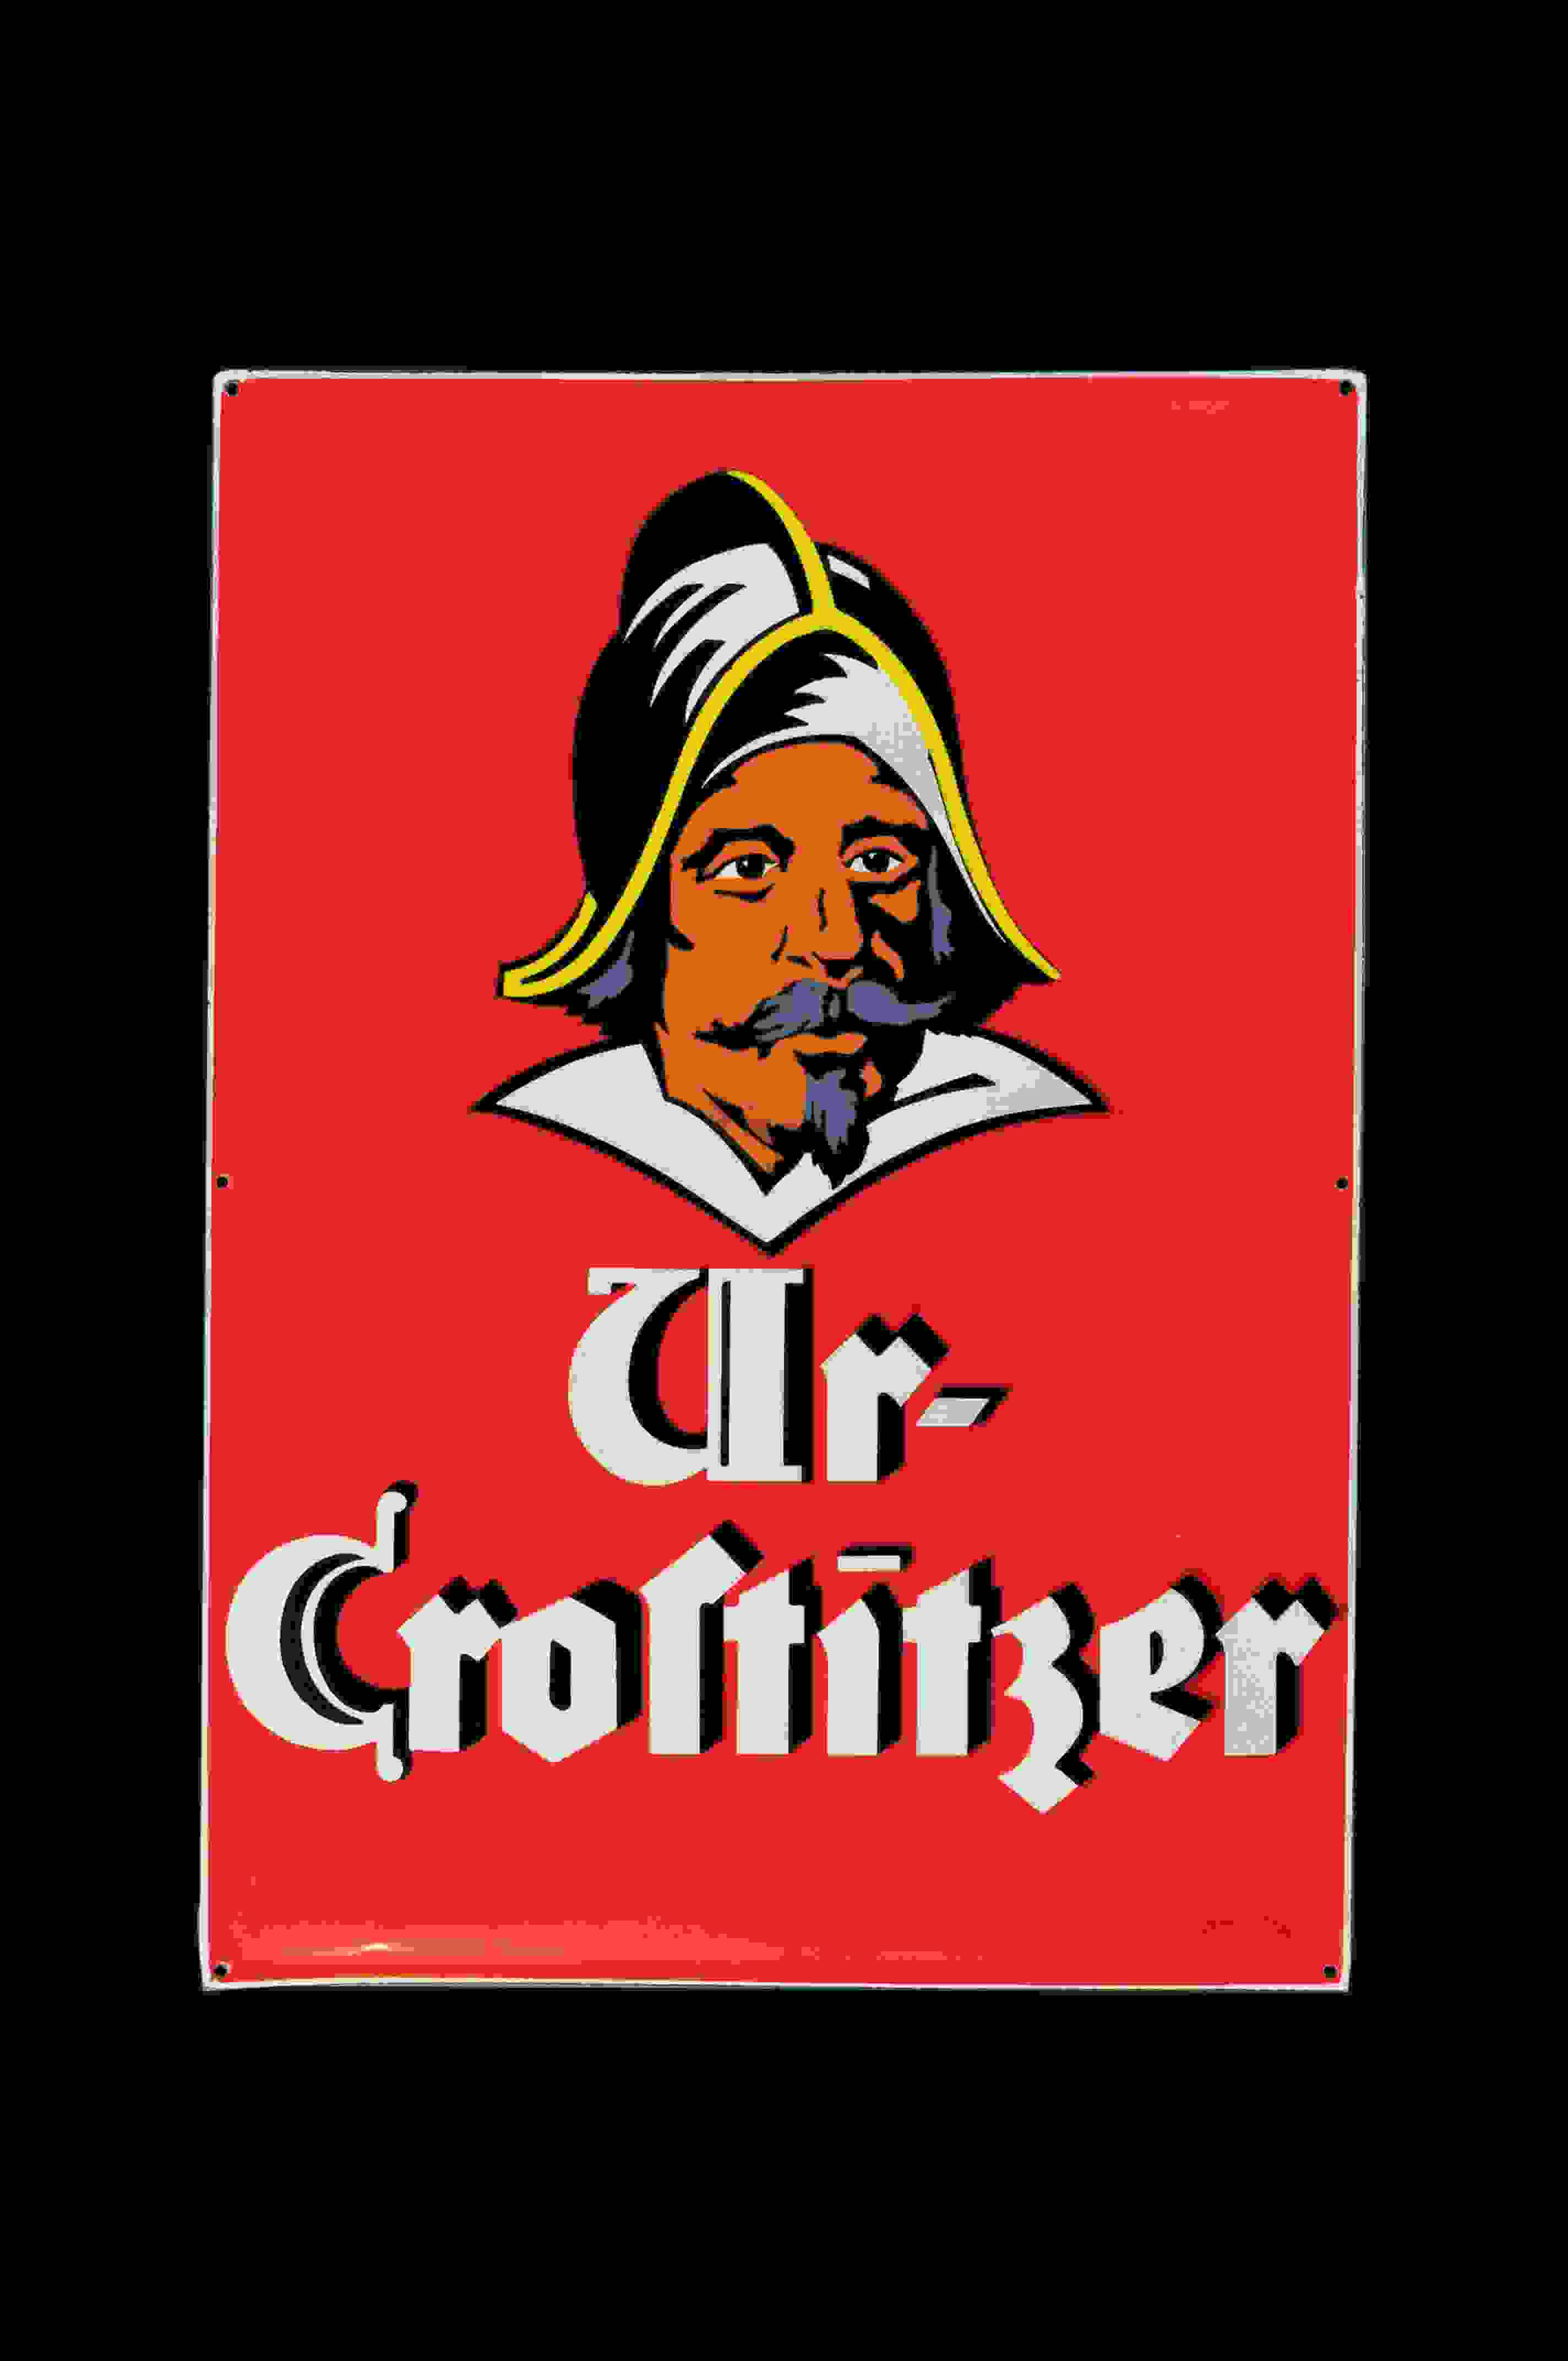 Ur-Crostitzer 